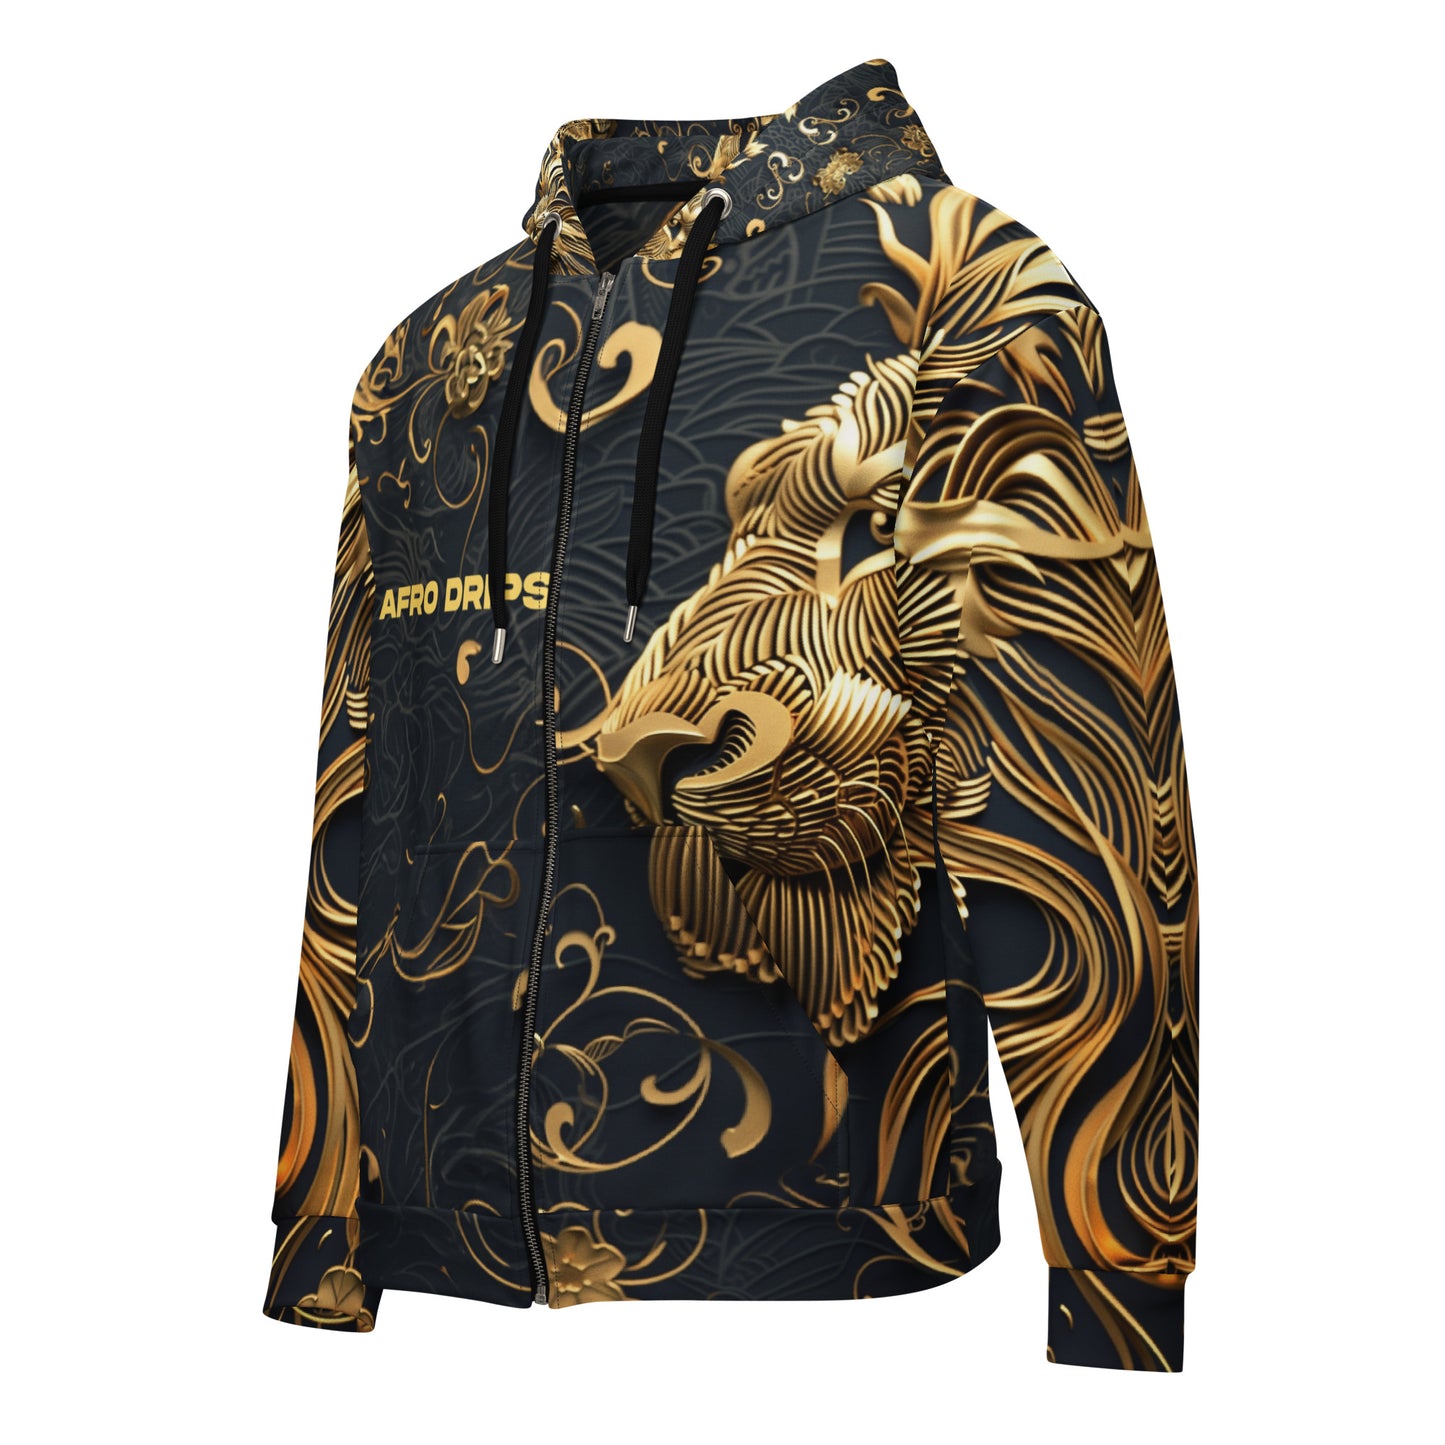 Lion Afro Drips - zip hoodie